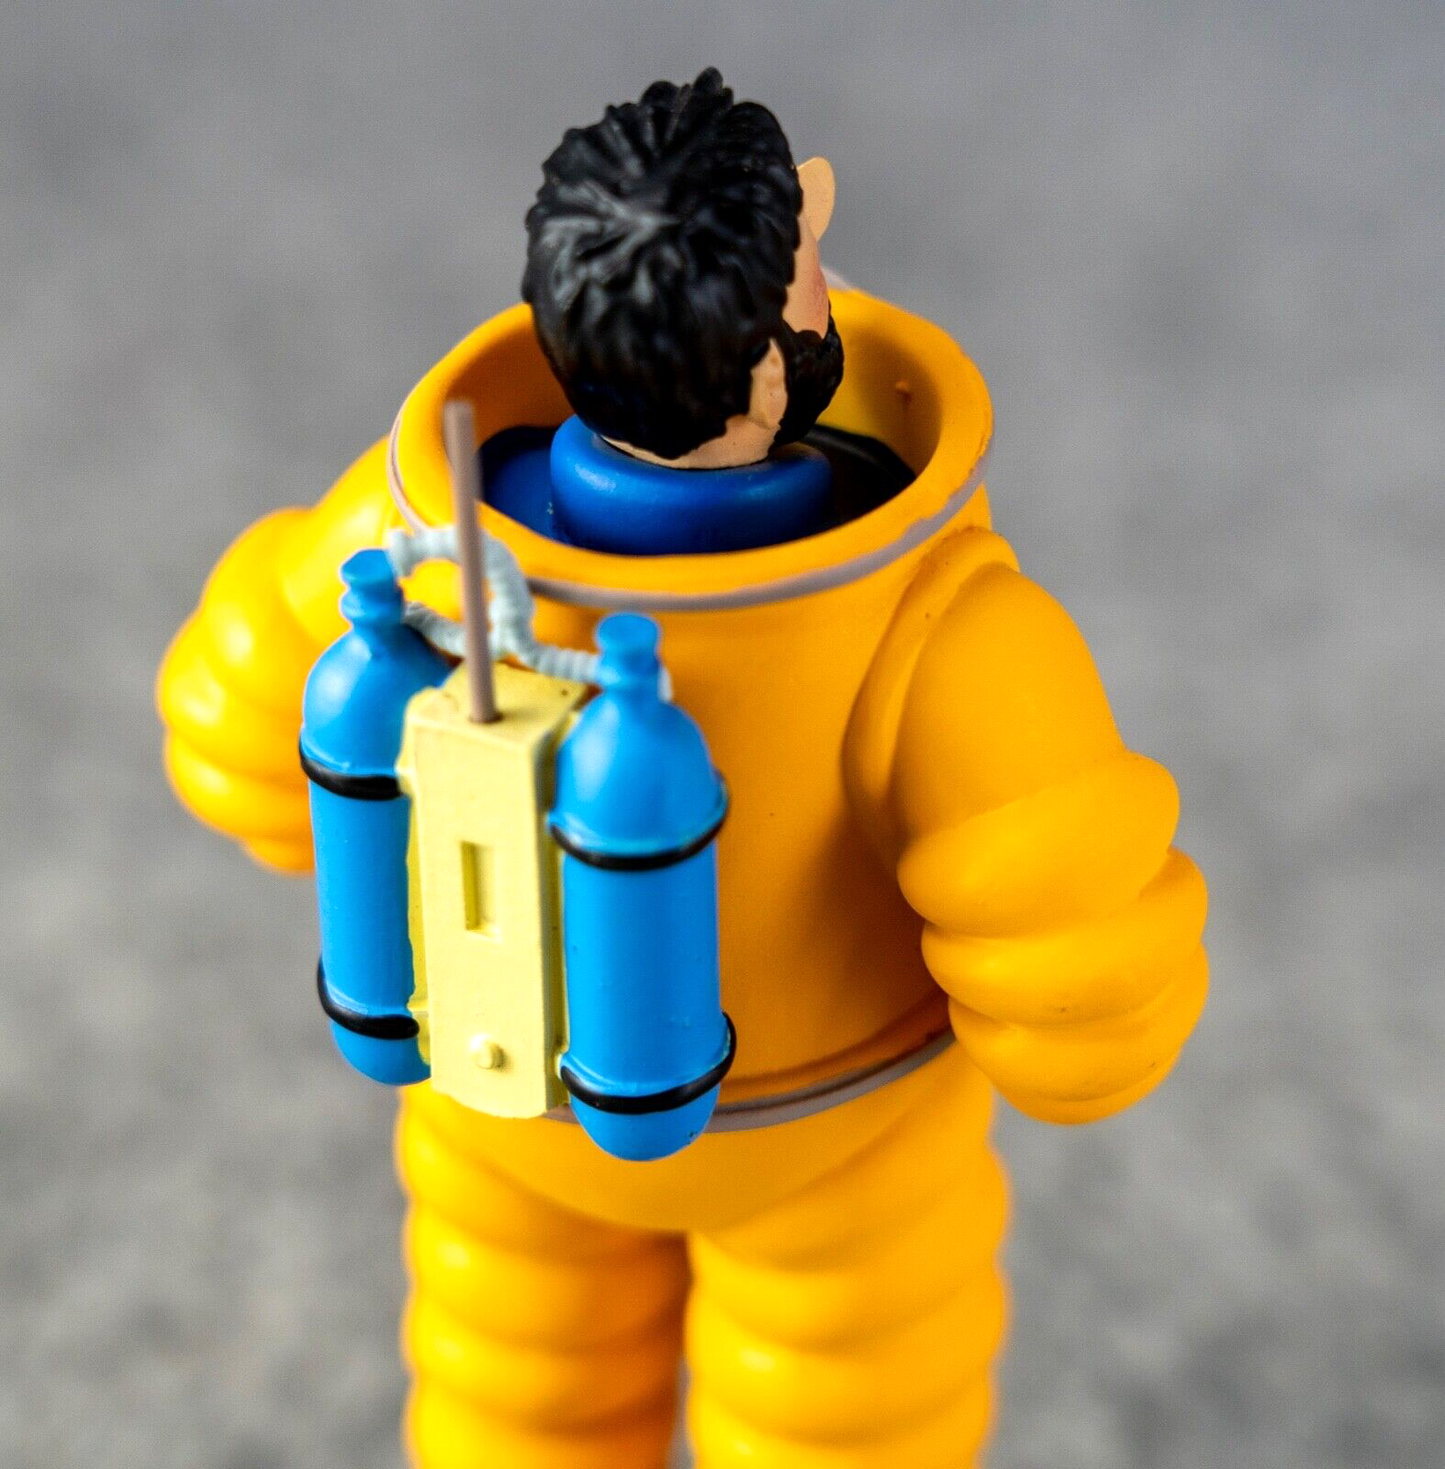 Tintin Figurine Moulinsart 42200 Haddock Spacesuit Explorers Moon 12cm Model 101